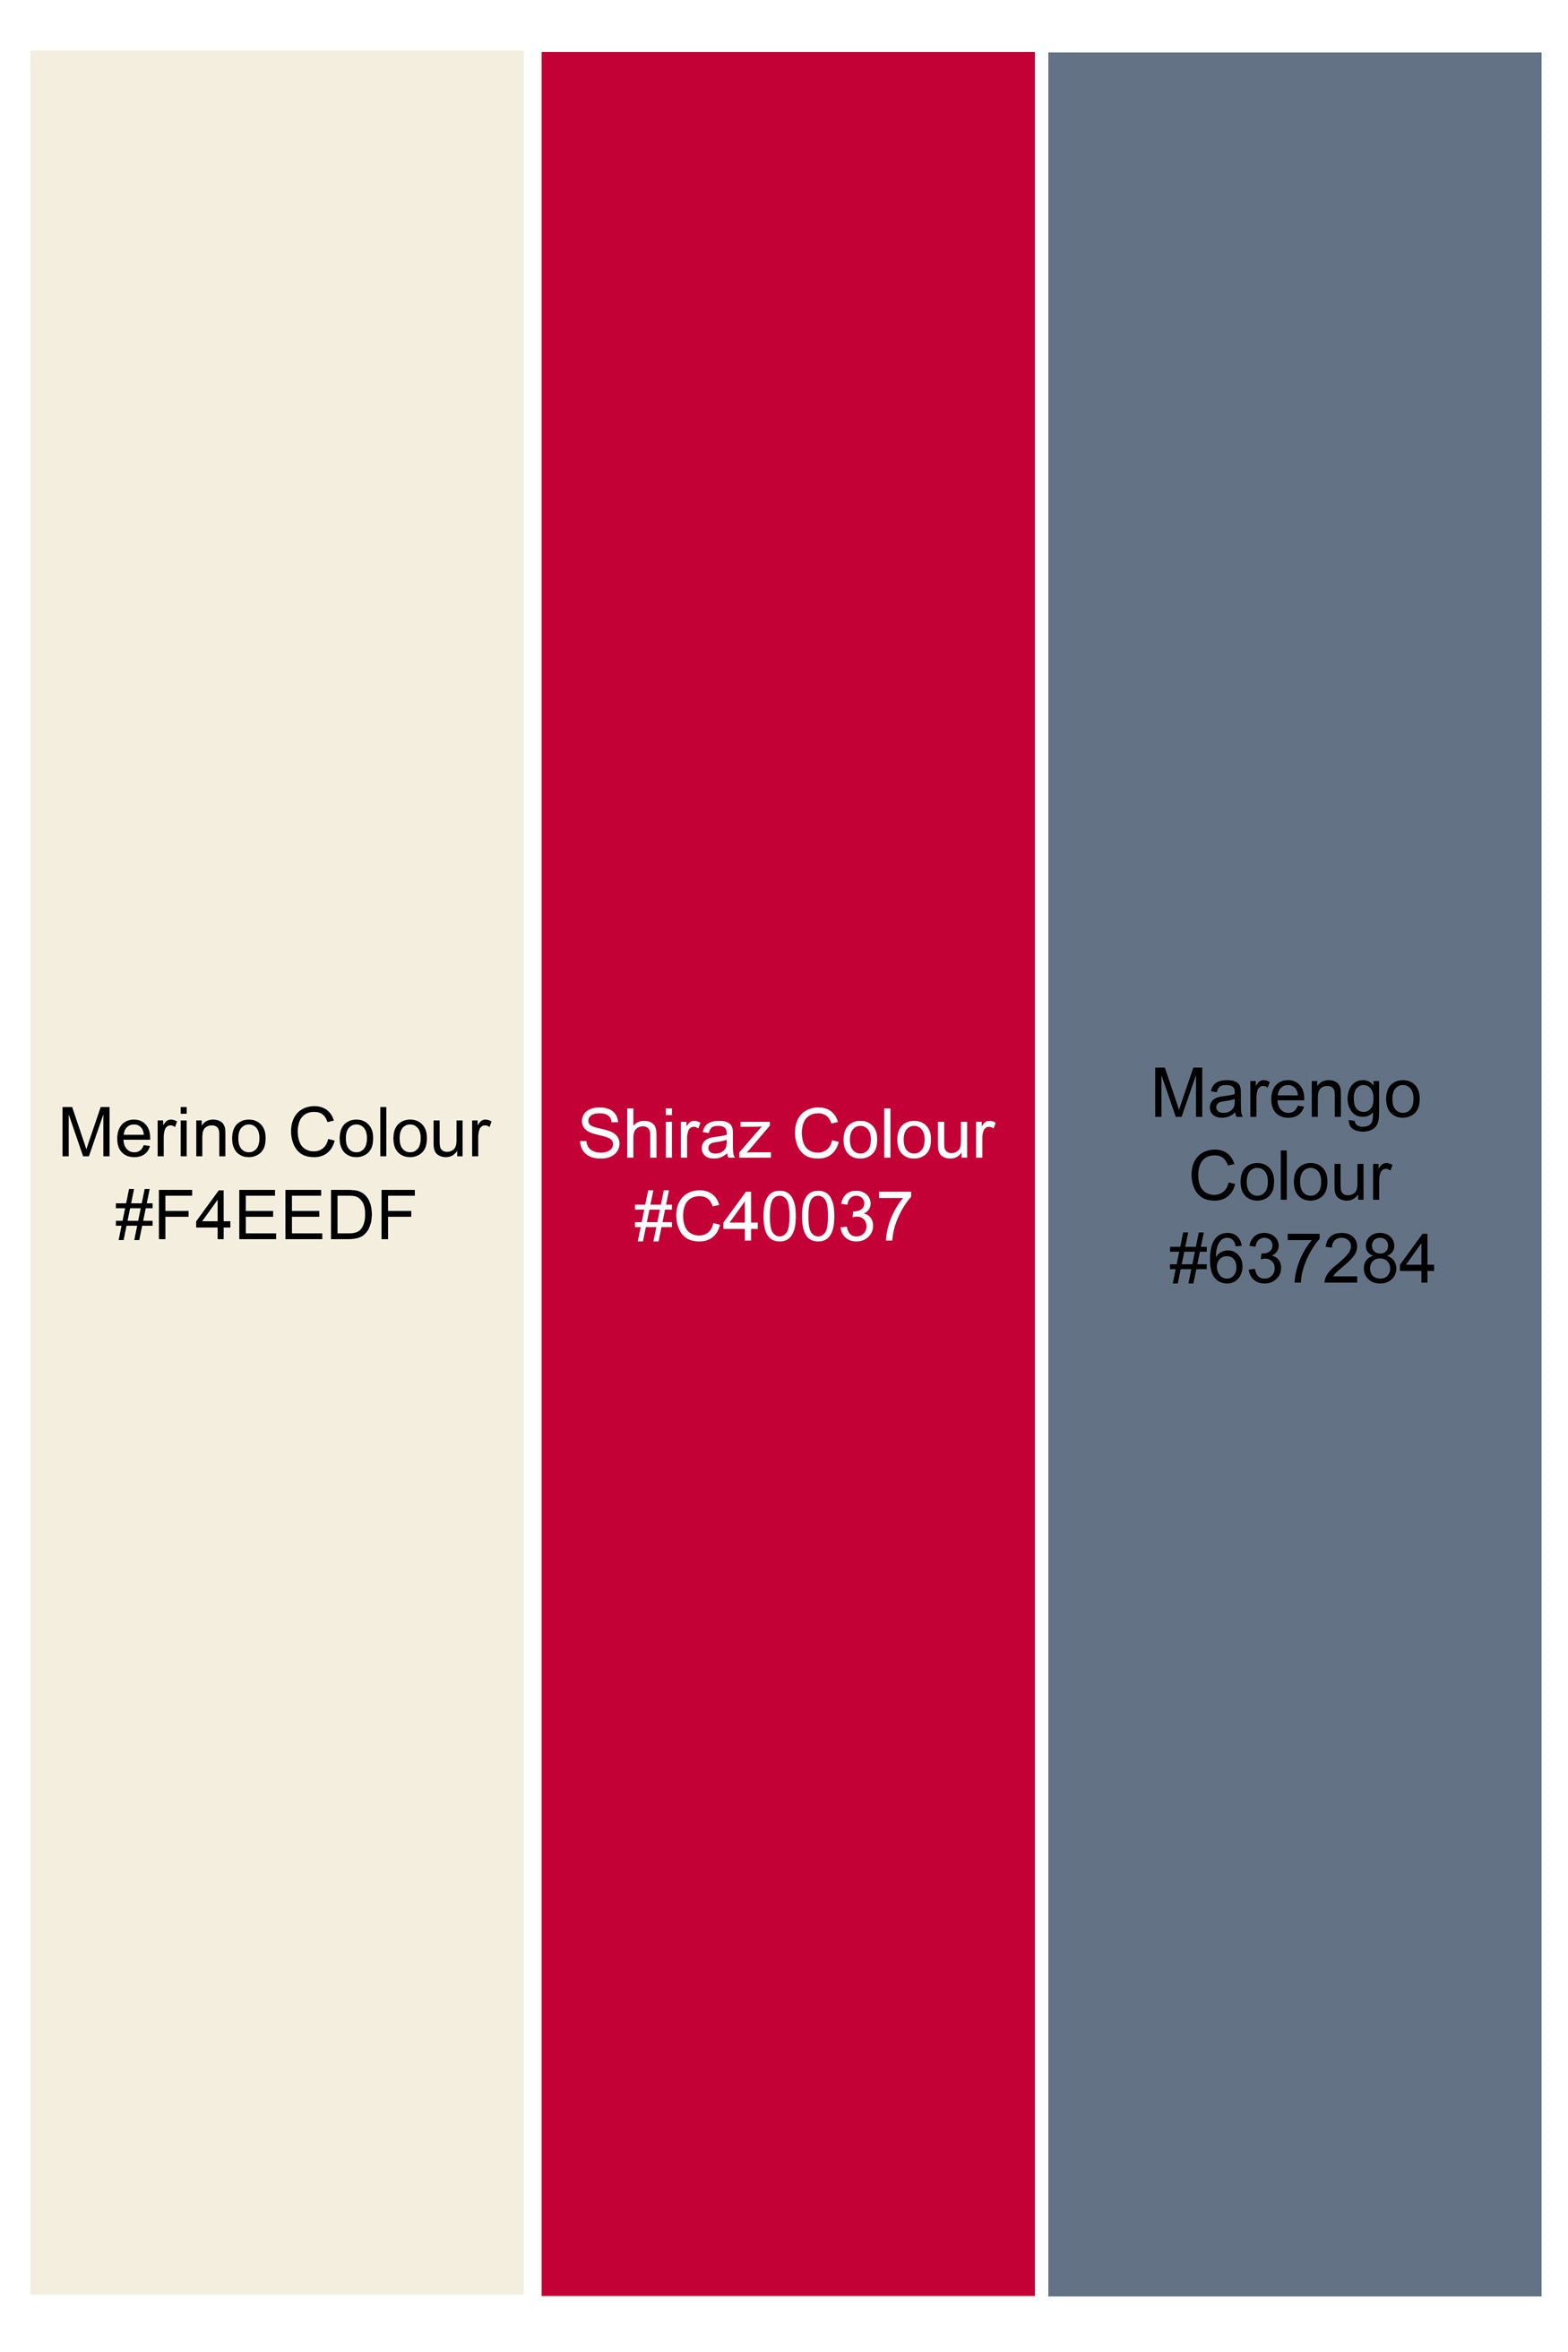 Merino Cream and Shiraz Red Ditsy Printed Premium Cotton Shorts SR395-28, SR395-30, SR395-32, SR395-34, SR395-36, SR395-38, SR395-40, SR395-42, SR395-44